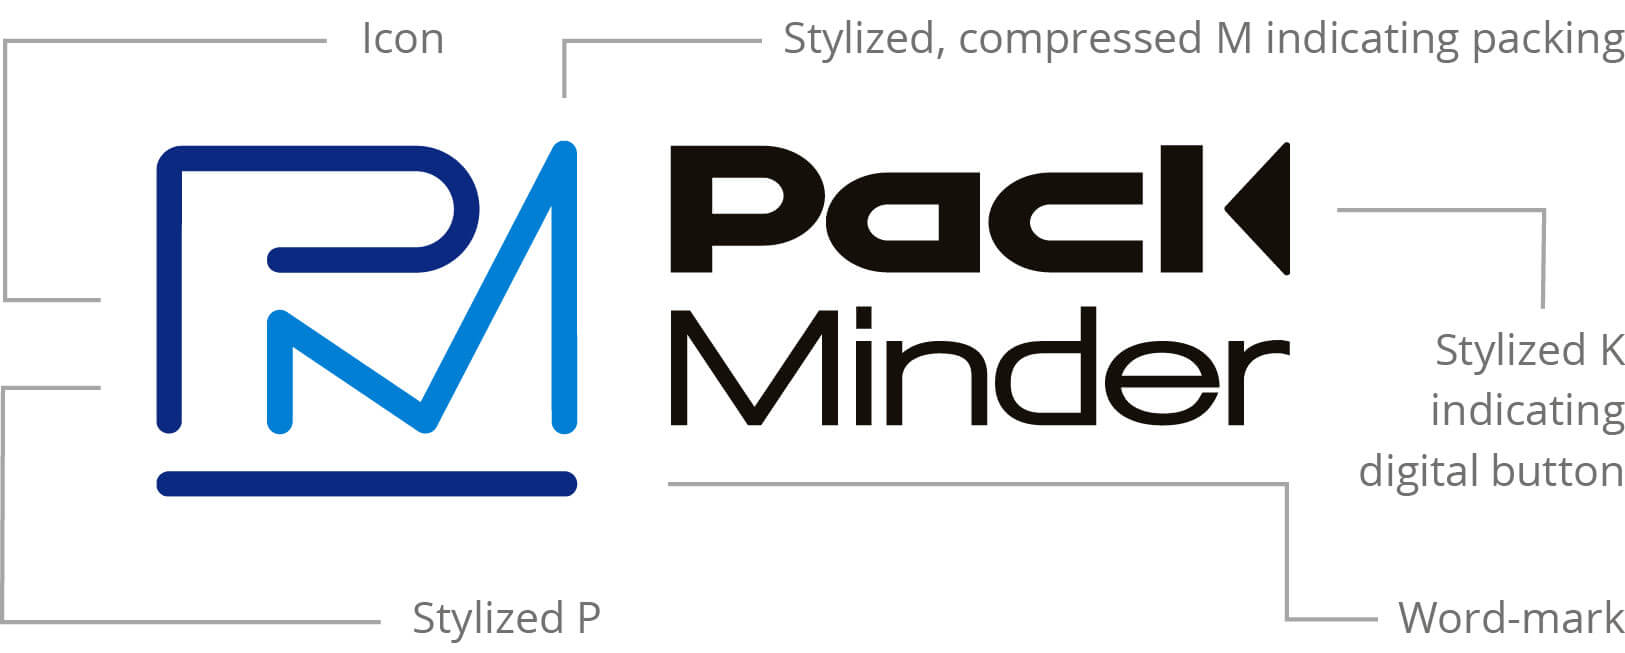 Final PackMinder Logo